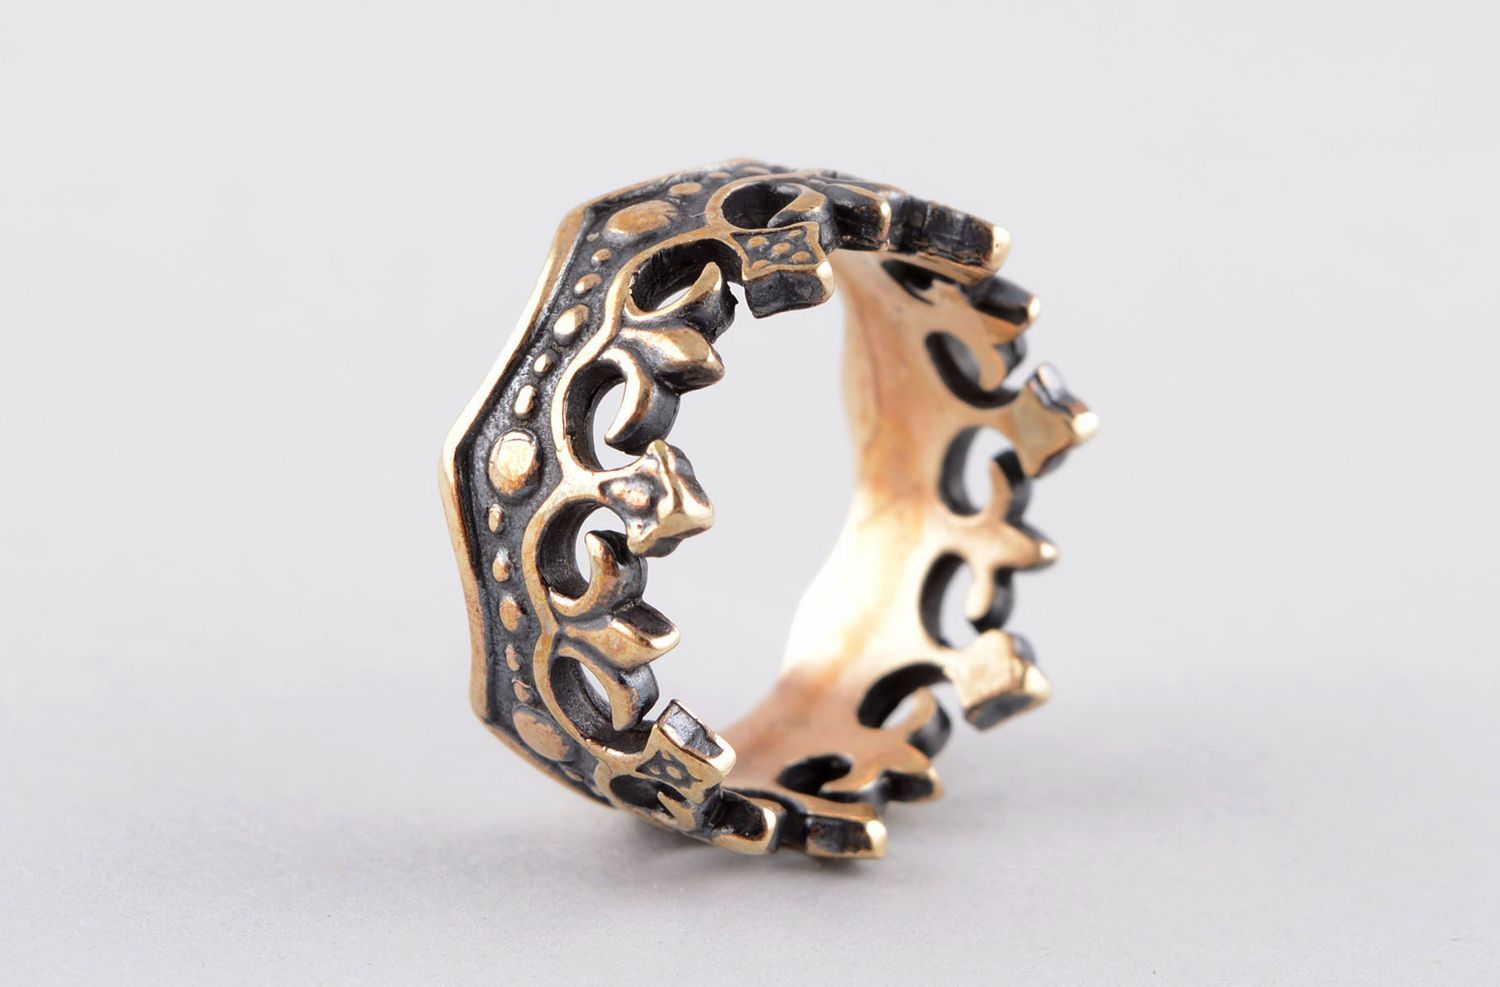 Кольцо ручной работы бронзовое кольцо почерненное женское кольцо оригинальное фото 2